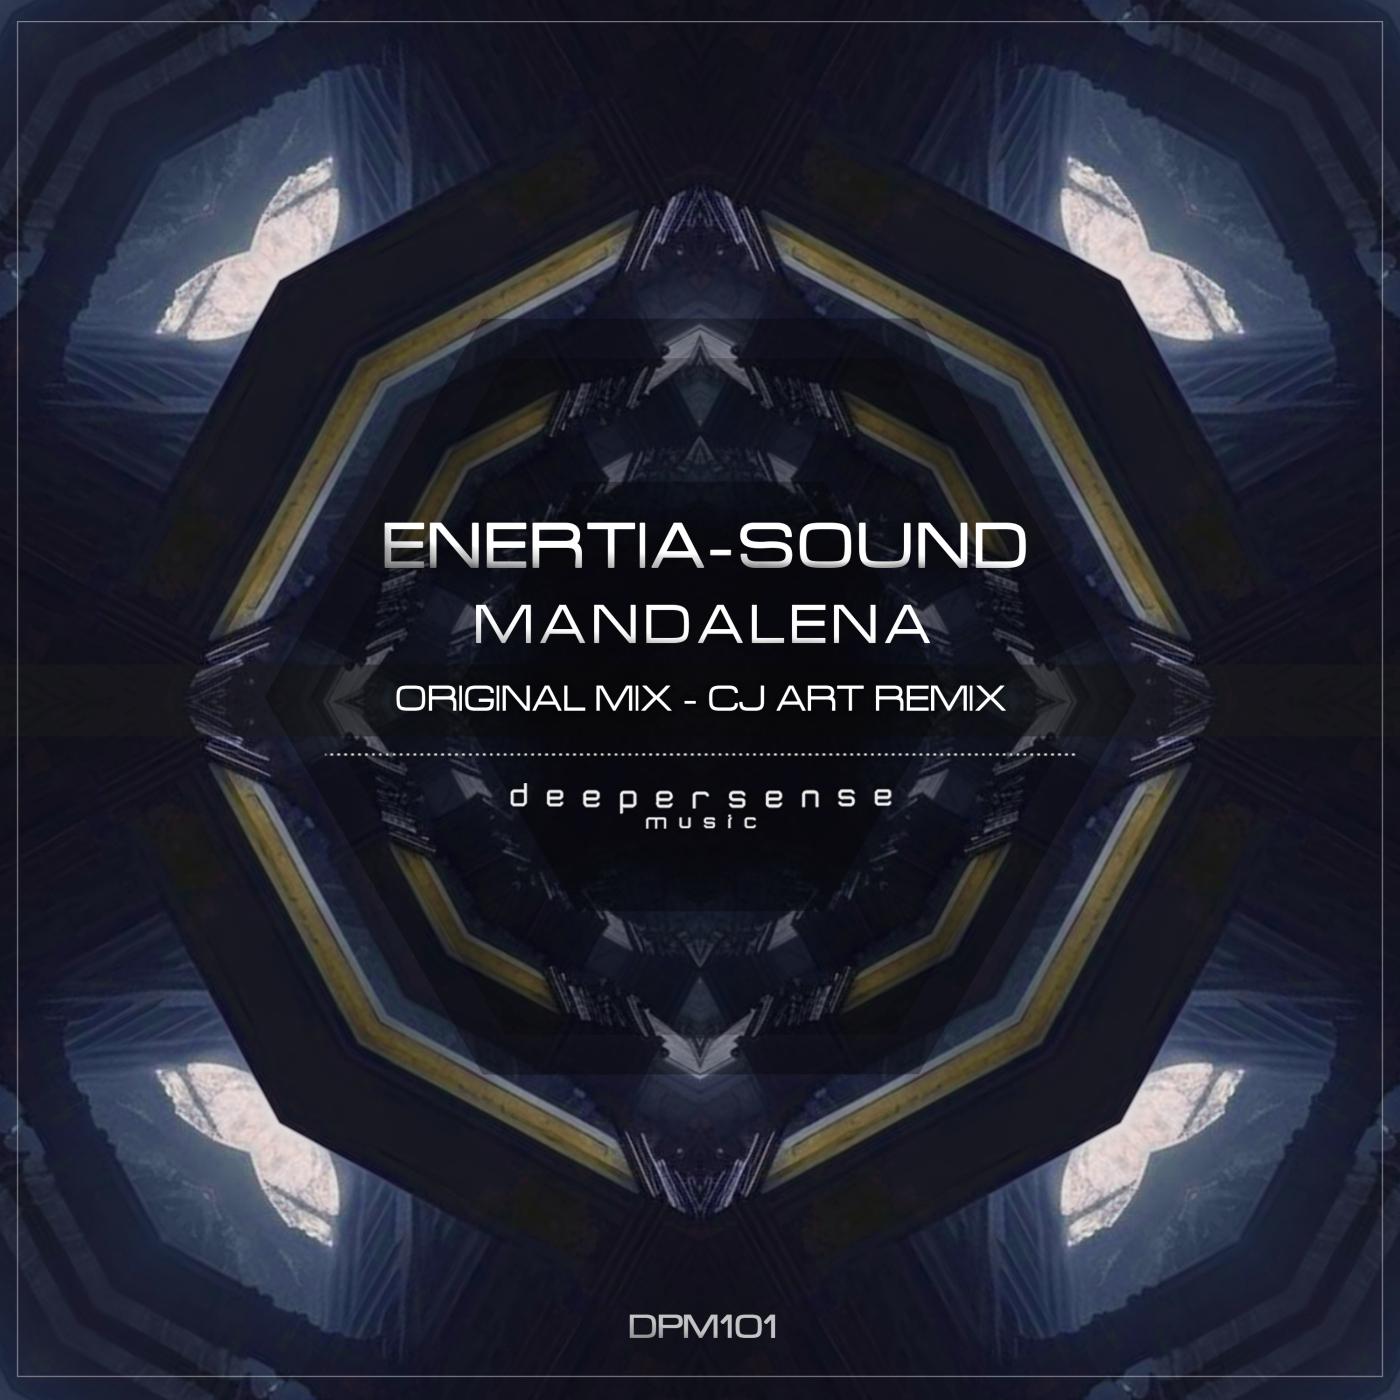 Enertia-sound - Mandalena